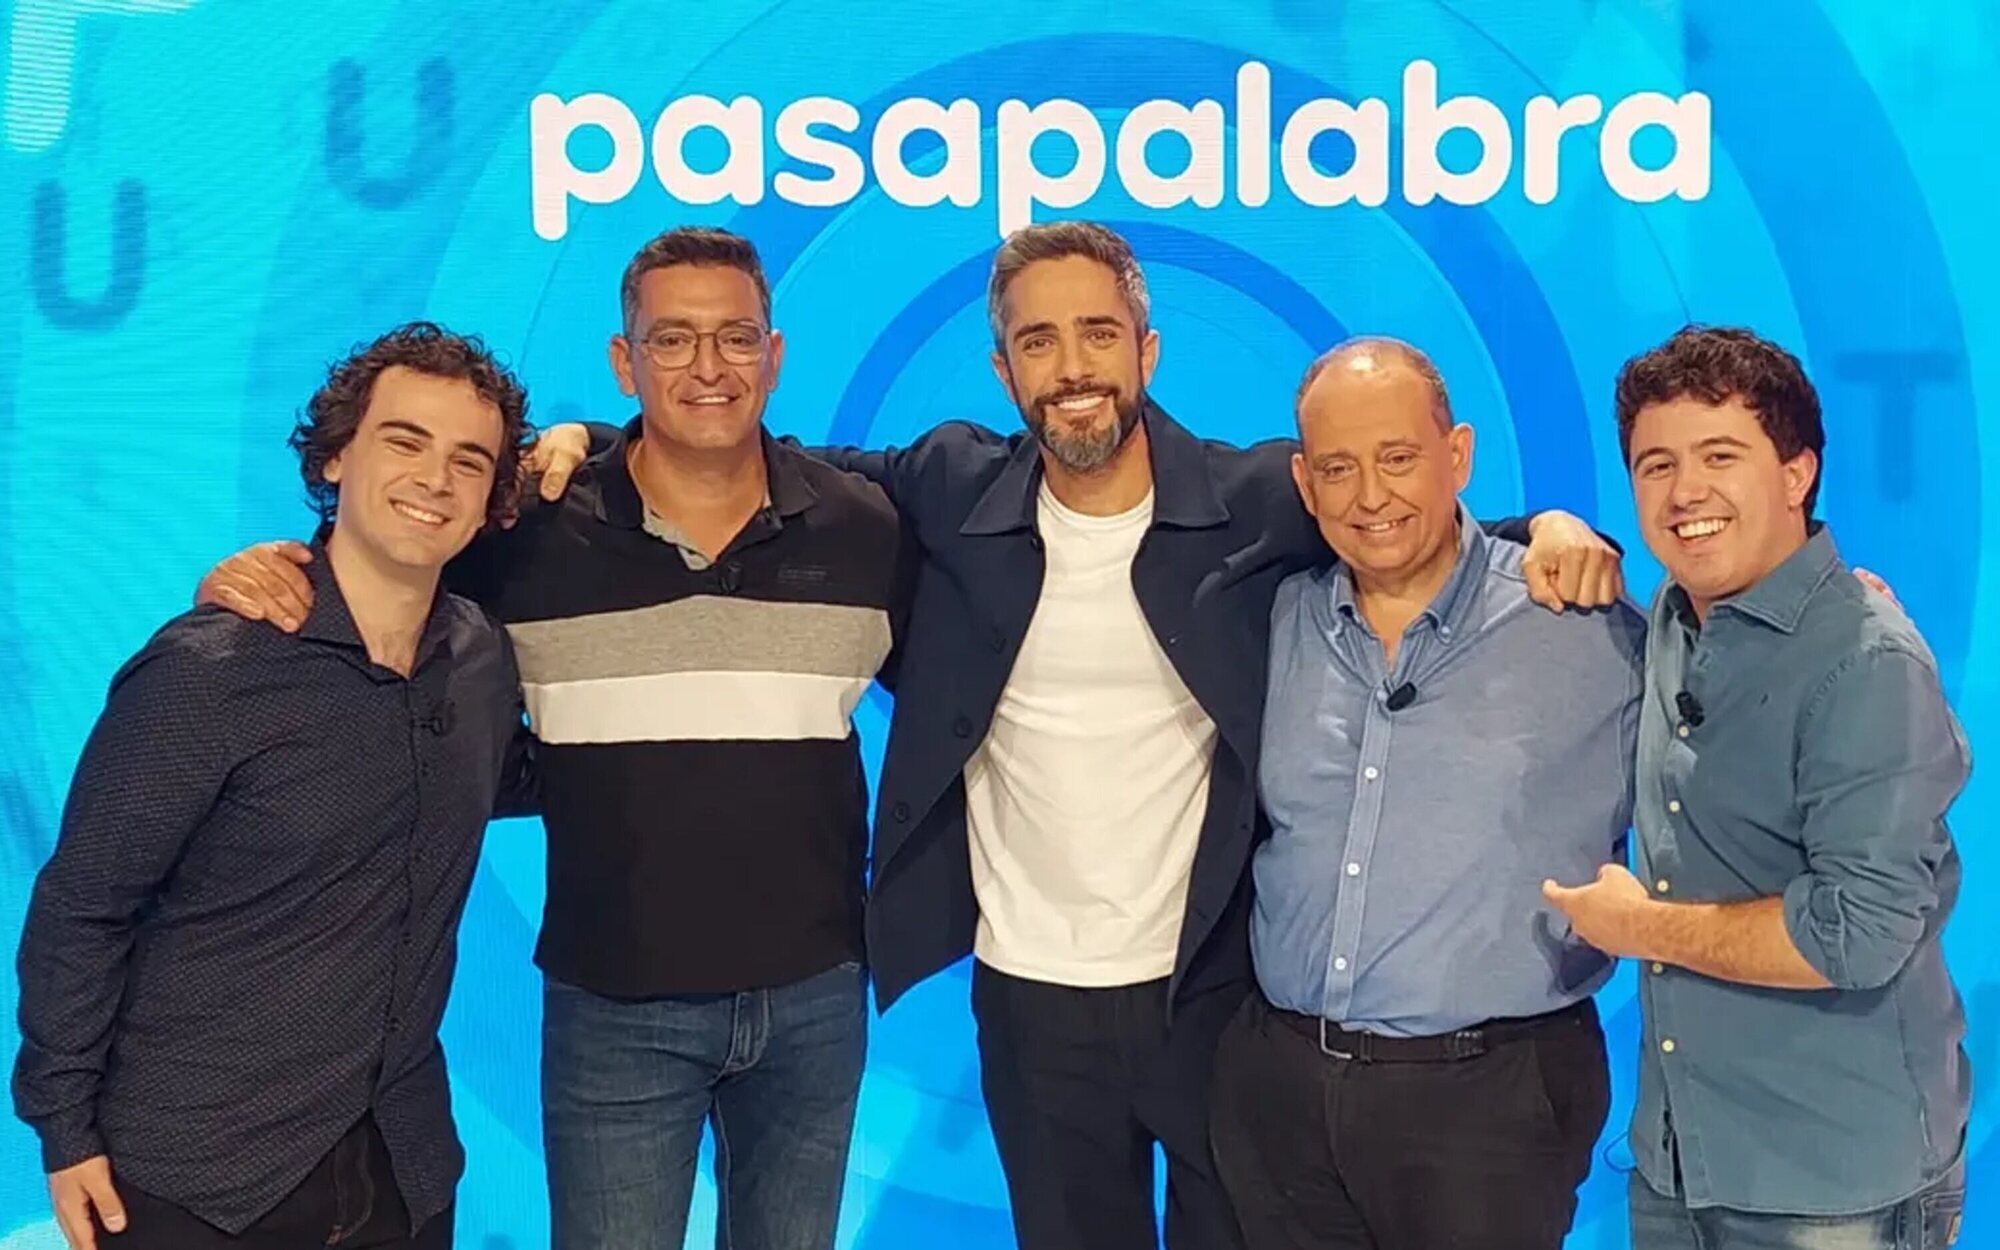 'Pasapalabra' salta al sábado con el regreso de Orestes Barbero y Pablo Díaz 